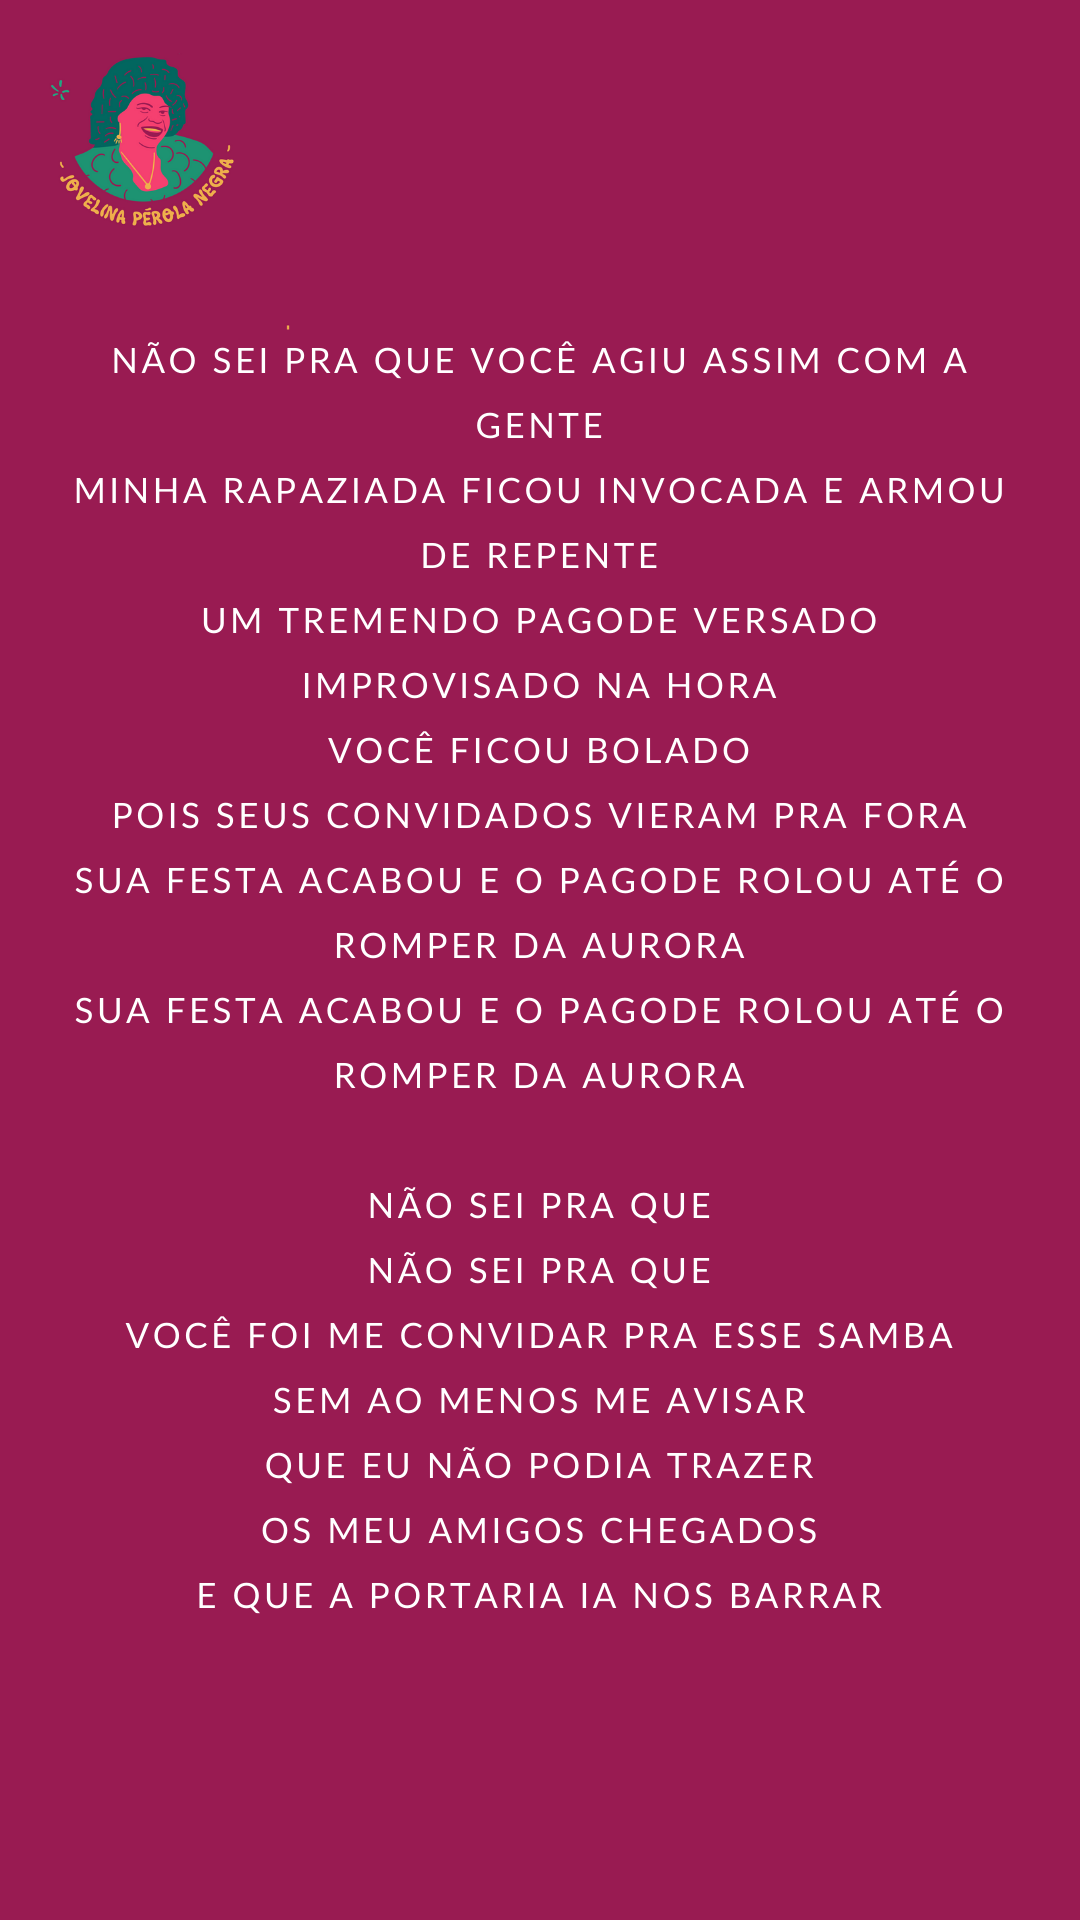 E Eu Não Fui Convidado - Ao Vivo - song and lyrics by Samba De Raiz